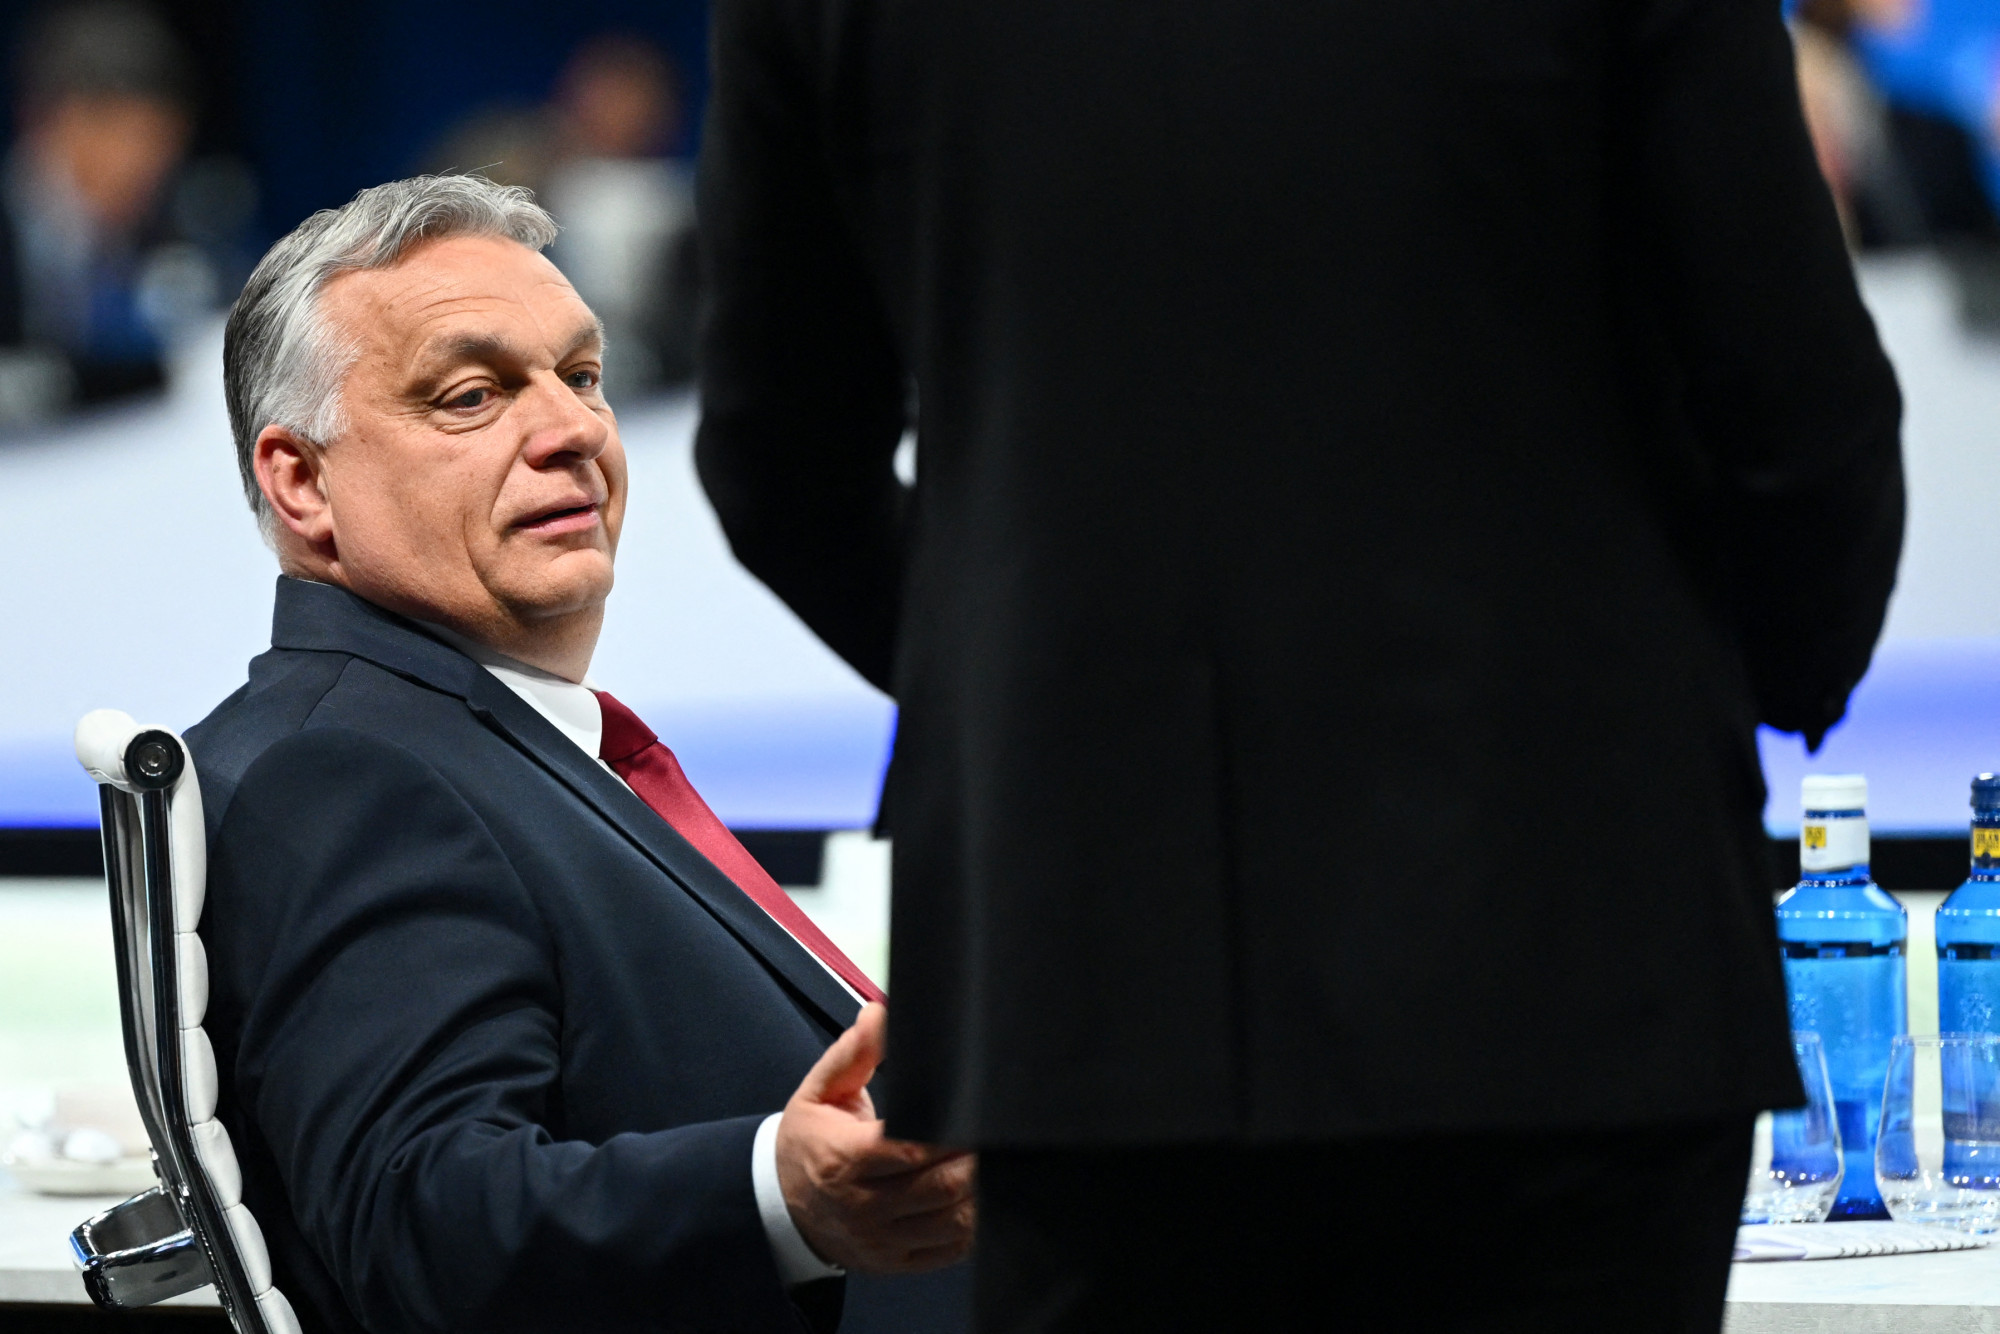 Péntek reggel nem mehetett nyaralni Orbán a honvédségi géppel, mert délután kormányülésen volt